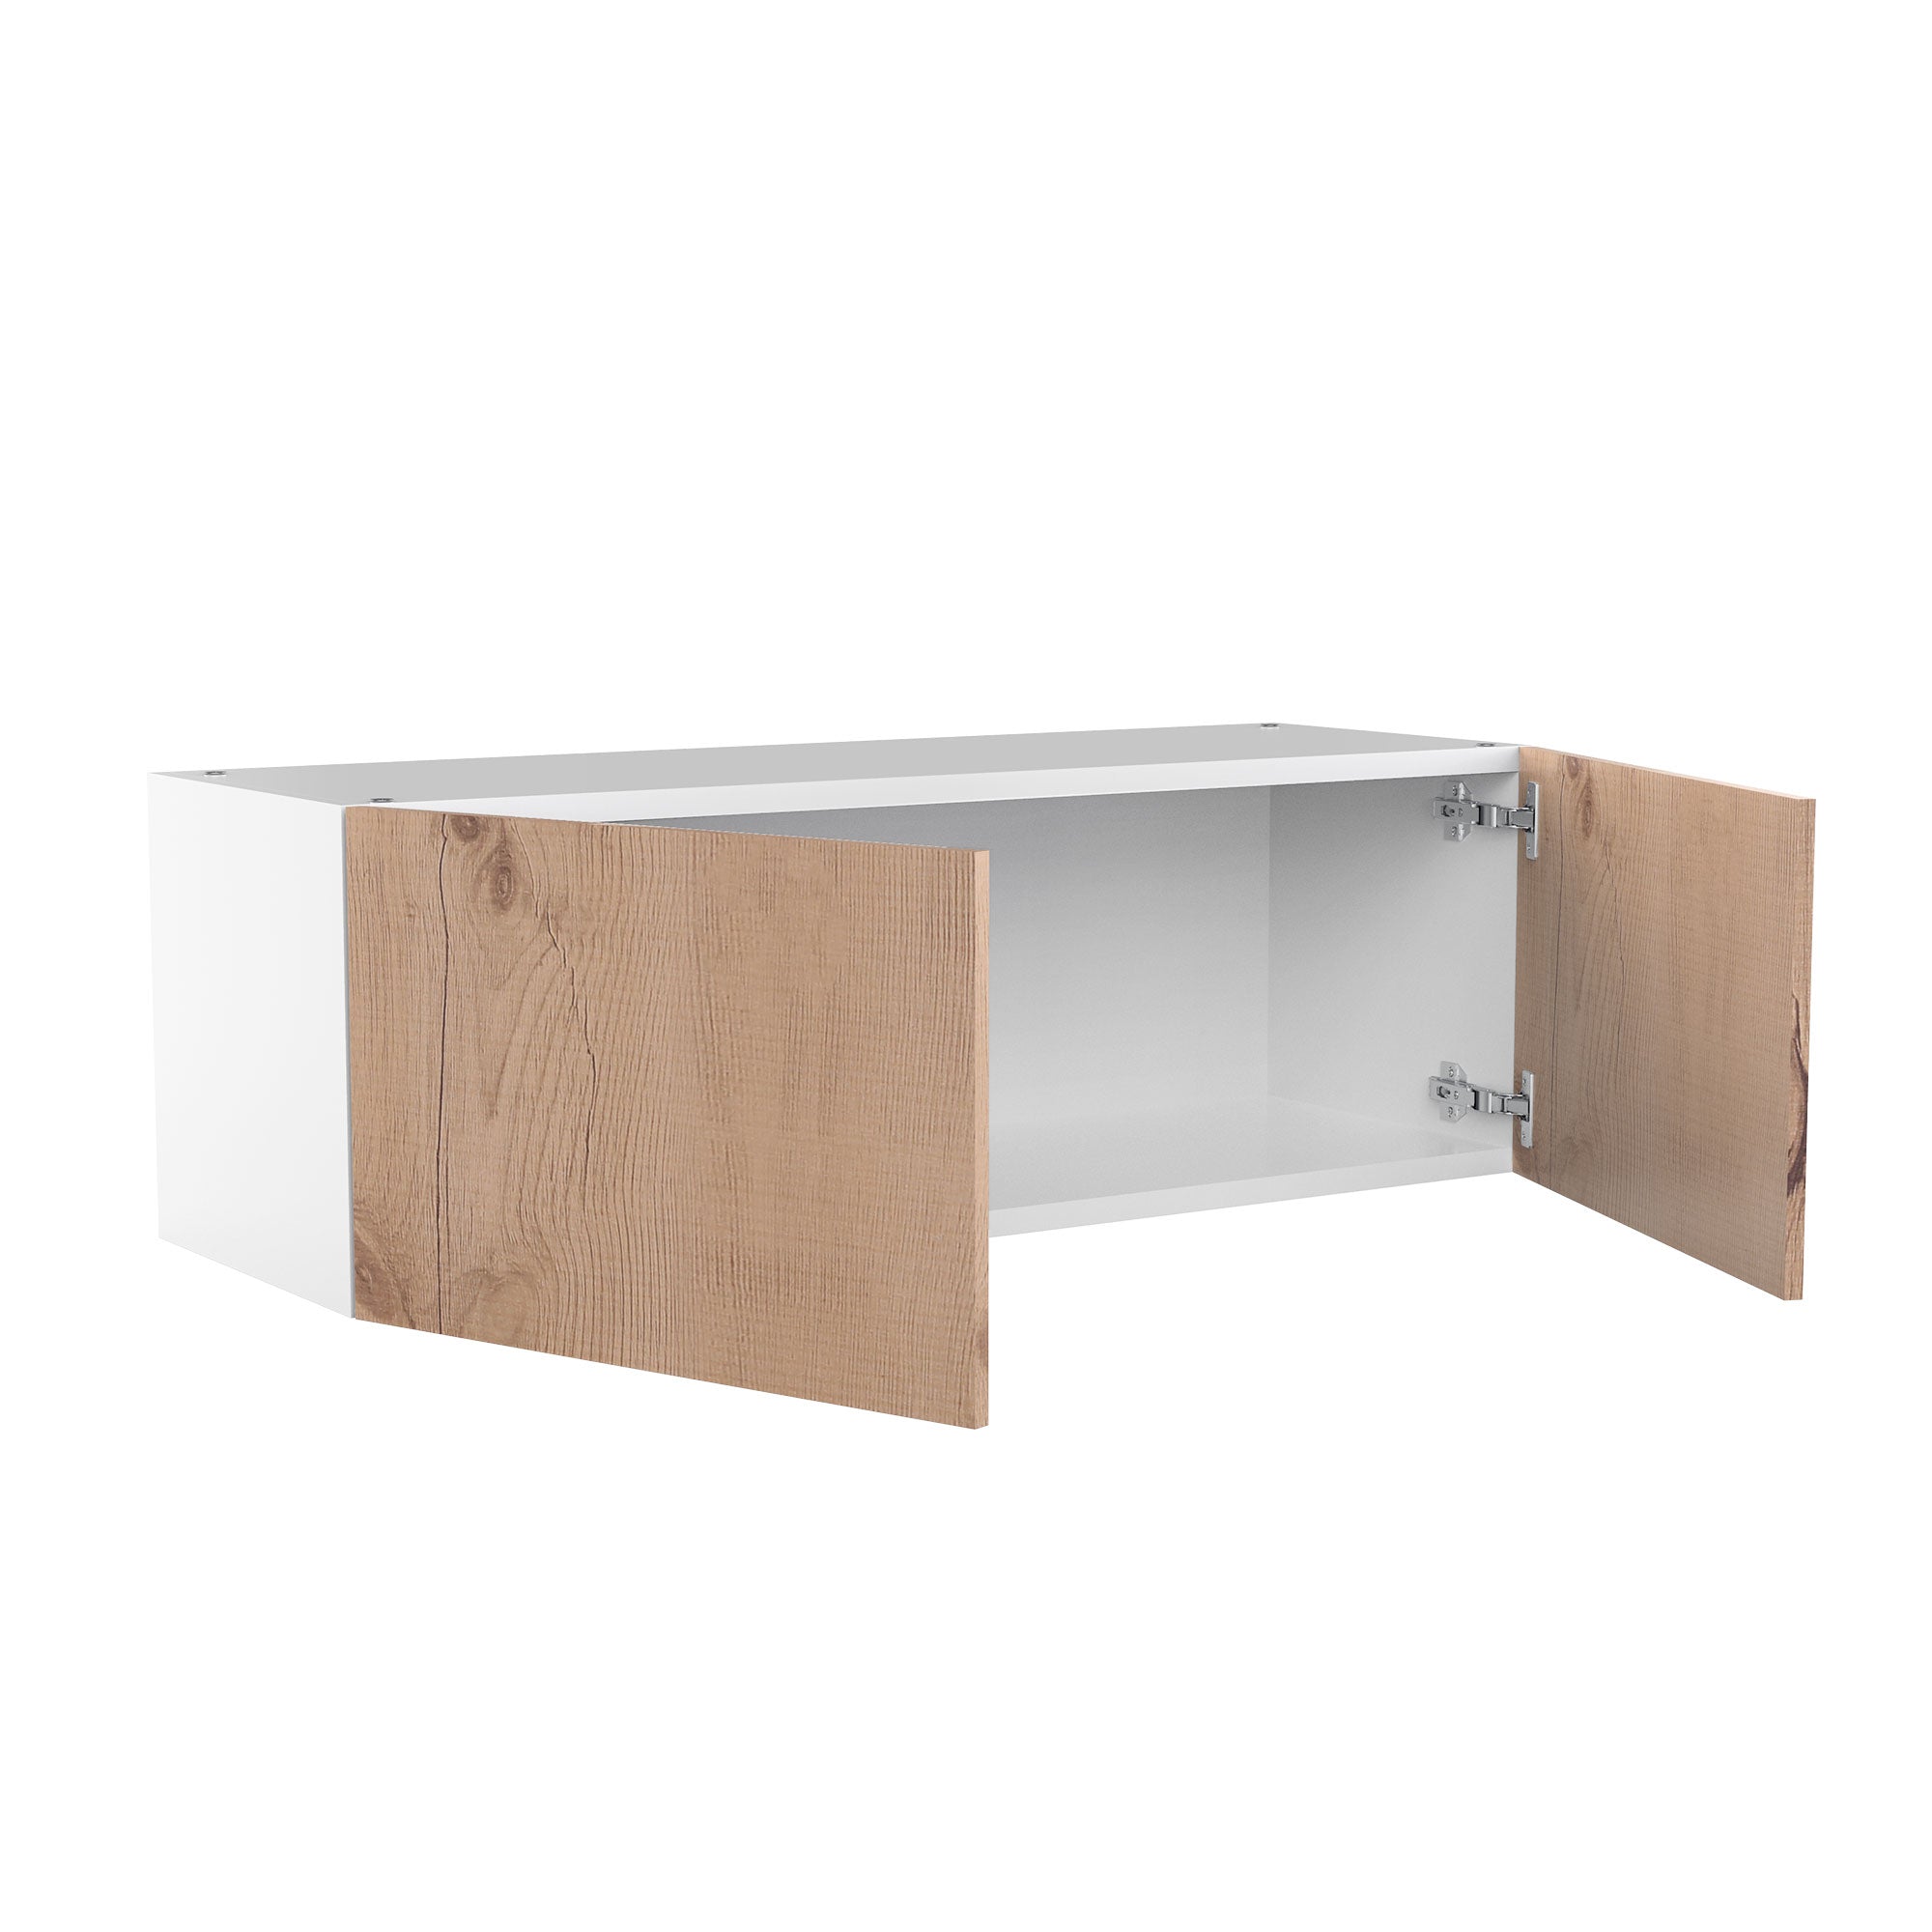 RTA - Rustic Oak - Double Door Wall Cabinets | 36"W x 12"H x 12"D